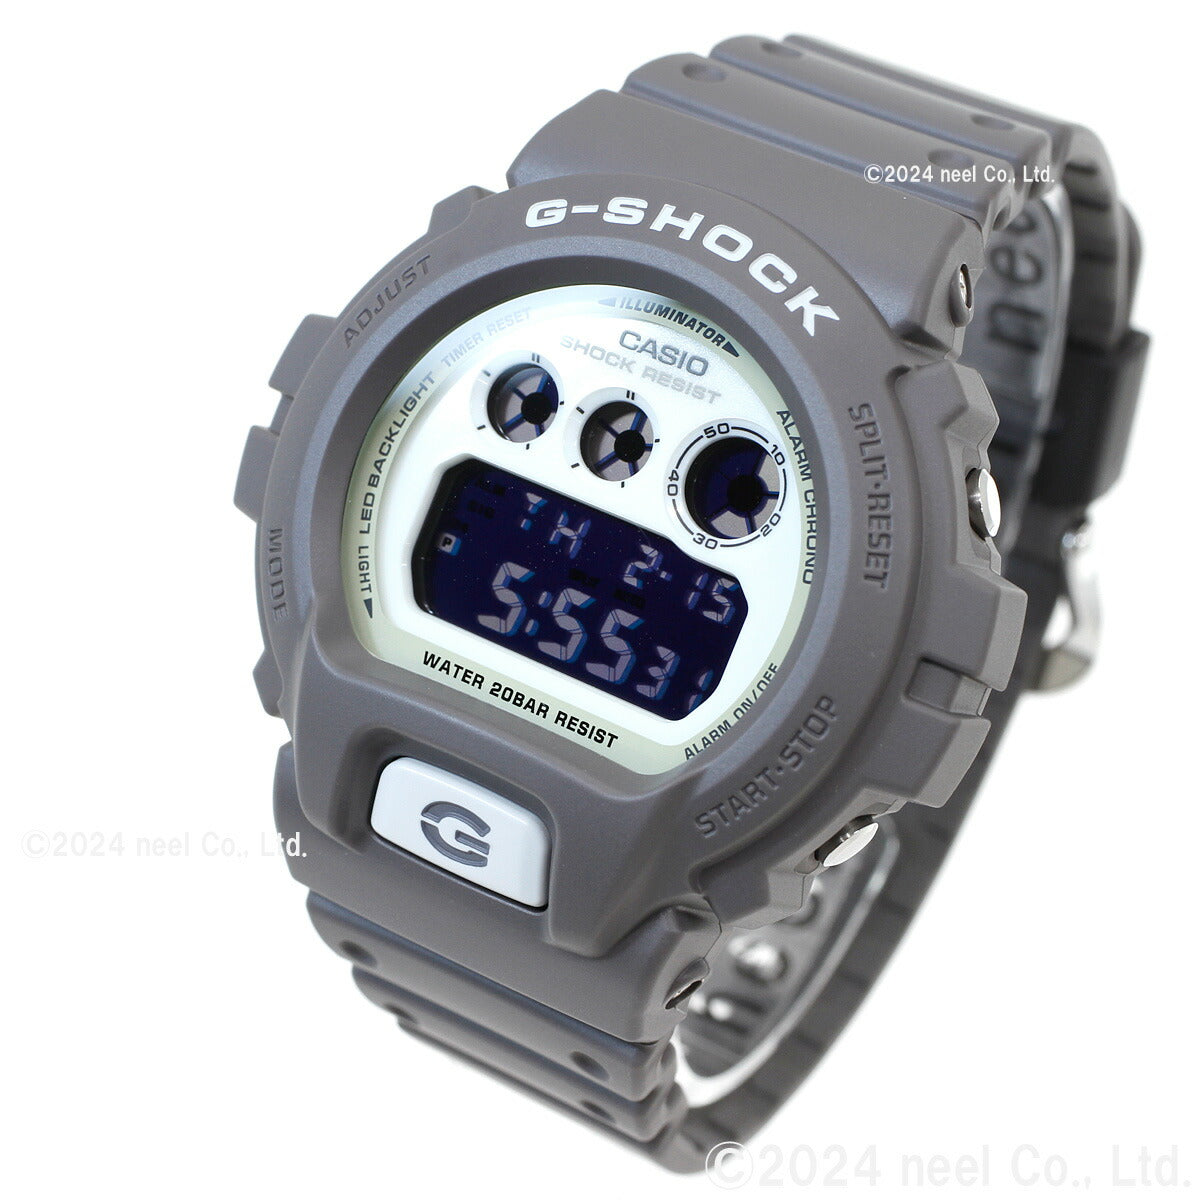 G-SHOCK デジタル メンズ 腕時計 カシオ CASIO DW-6900HD-8JF HIDDEN GLOW Series グレー【20 –  neel selectshop